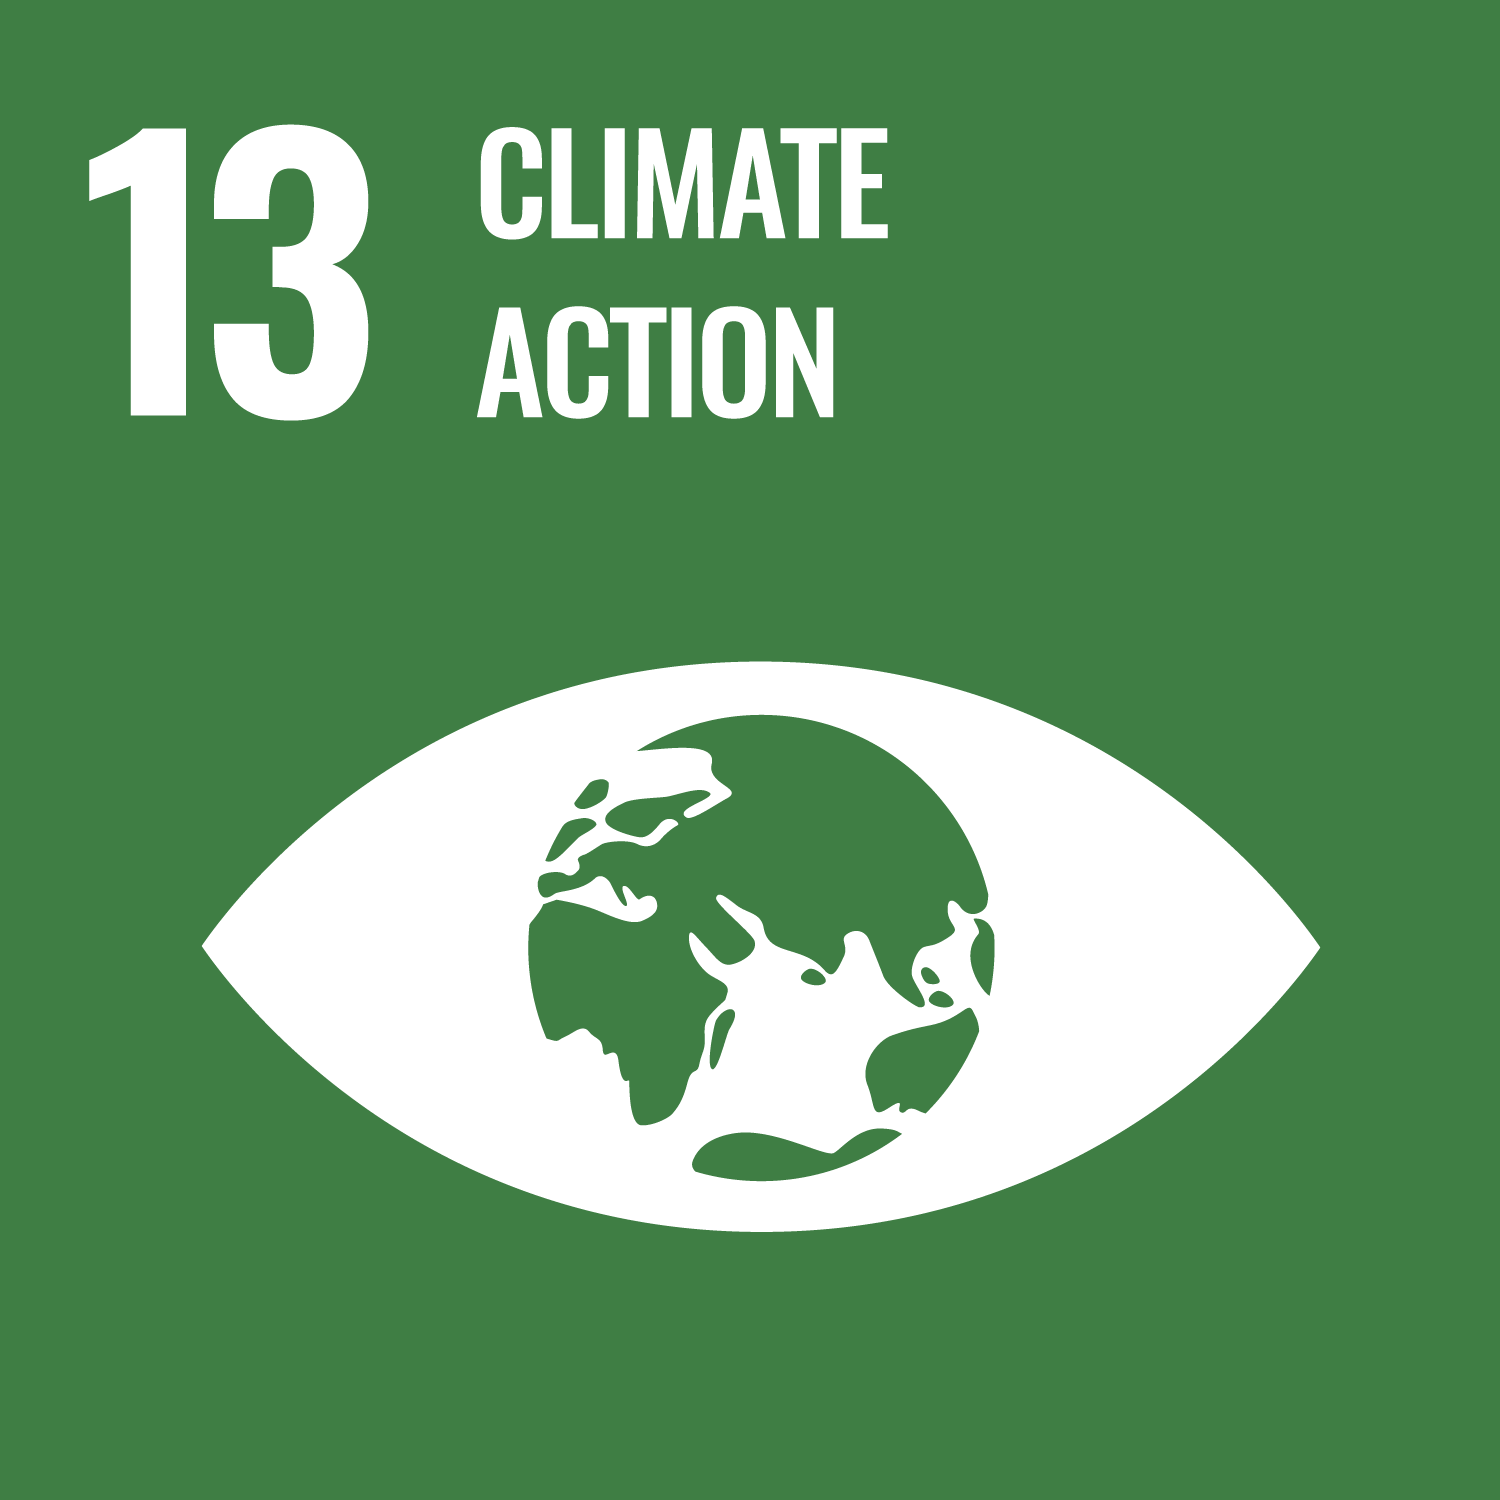 13 Climate Action (UN Goal)